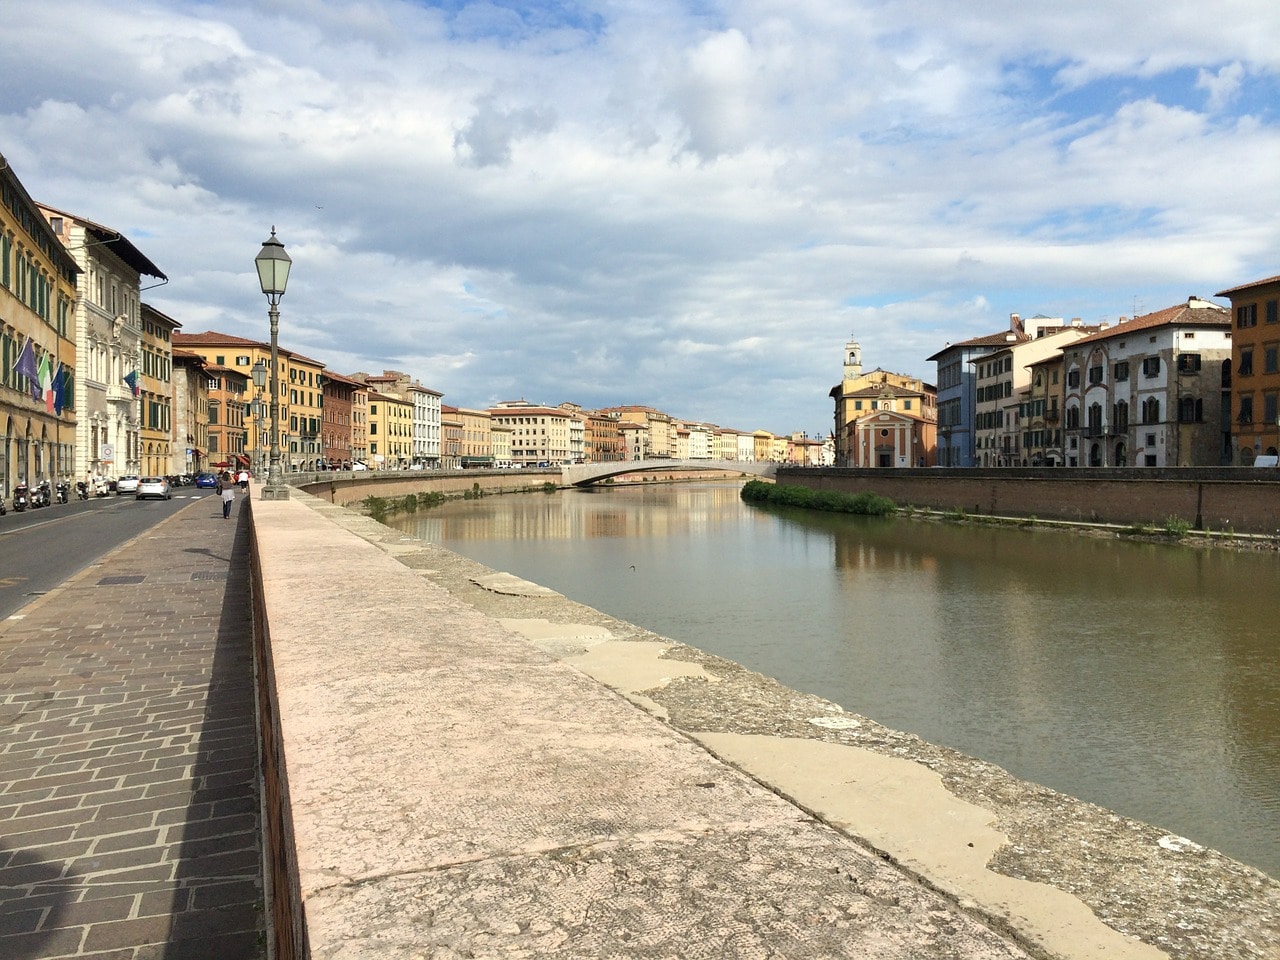 Una visita speciale a Pisa, battello sull'Arno e passeggiata sulle Mura - Toscana News.